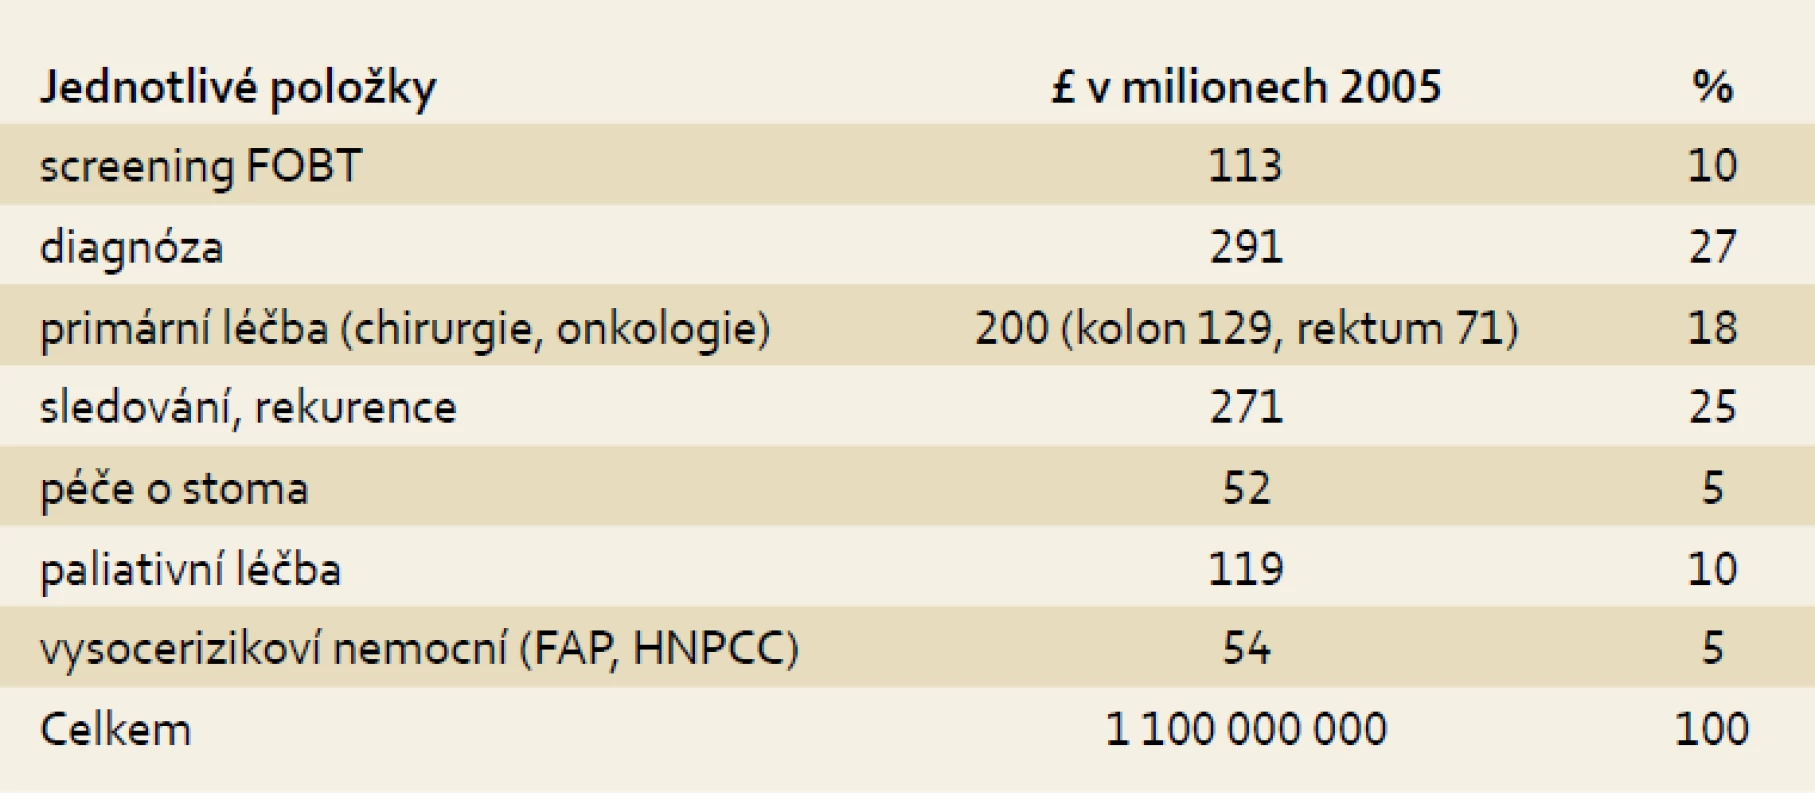 Náklady na diagnostiku a léčbu kolorektálního karcinomu ve Velké Británii.
Tab. 1. Costs of diagnostics and treatment of colorectal carcinoma in the UK.